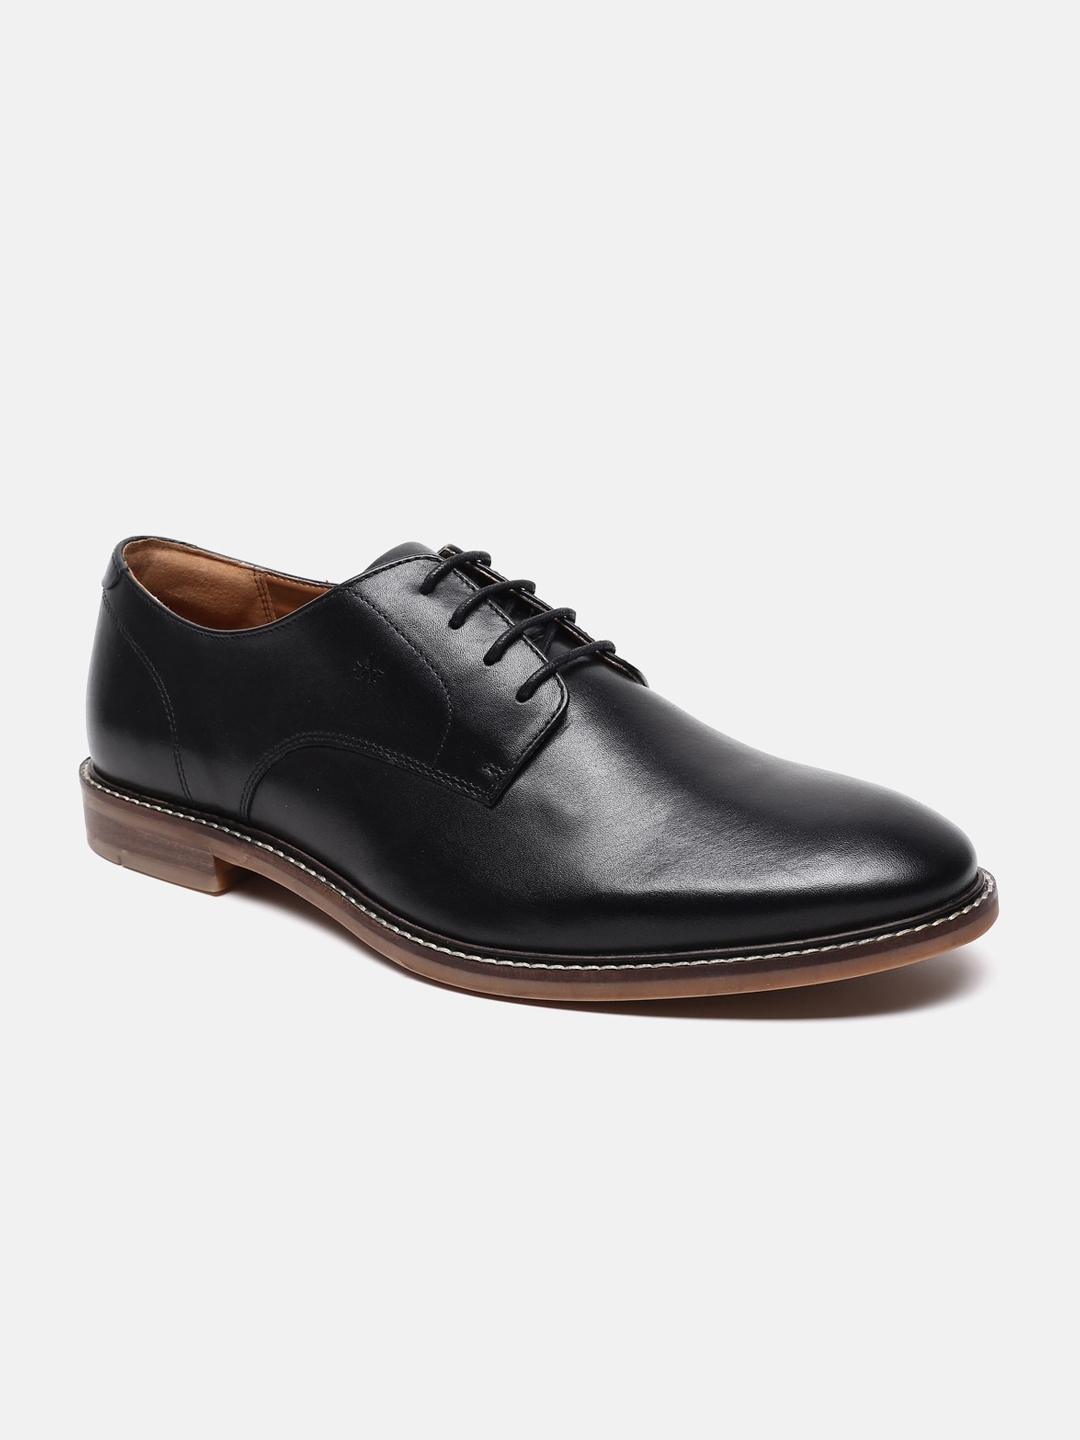 Buy Arrow Men Black Solid Leather Formal Derbys - Formal Shoes for Men ...